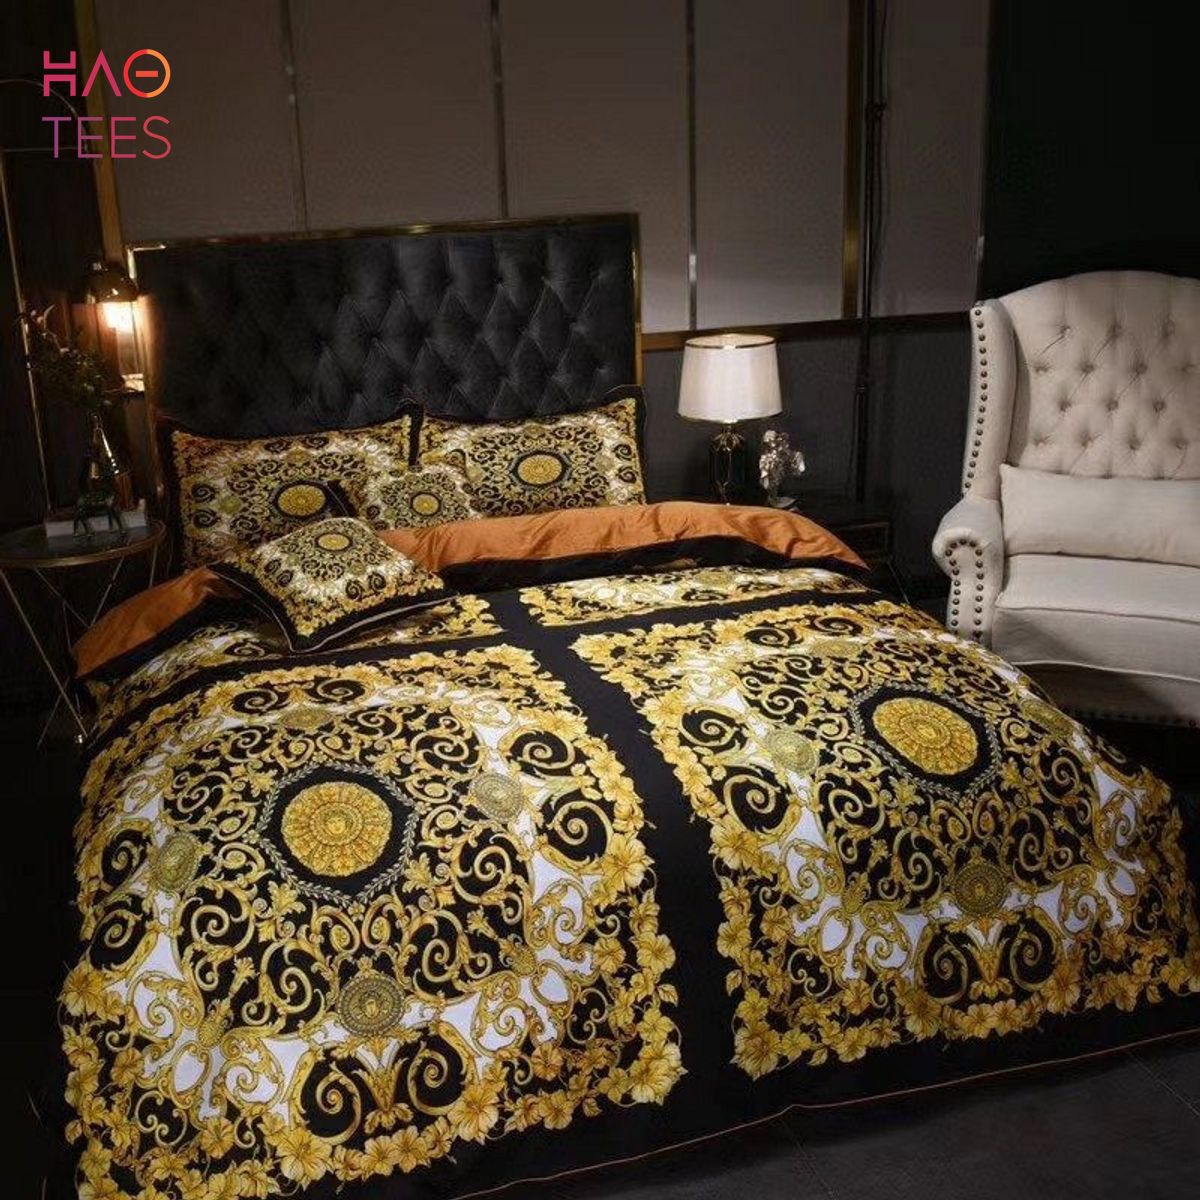 HOT Black Mix Golden Luxury Color Bedding Sets POD Design